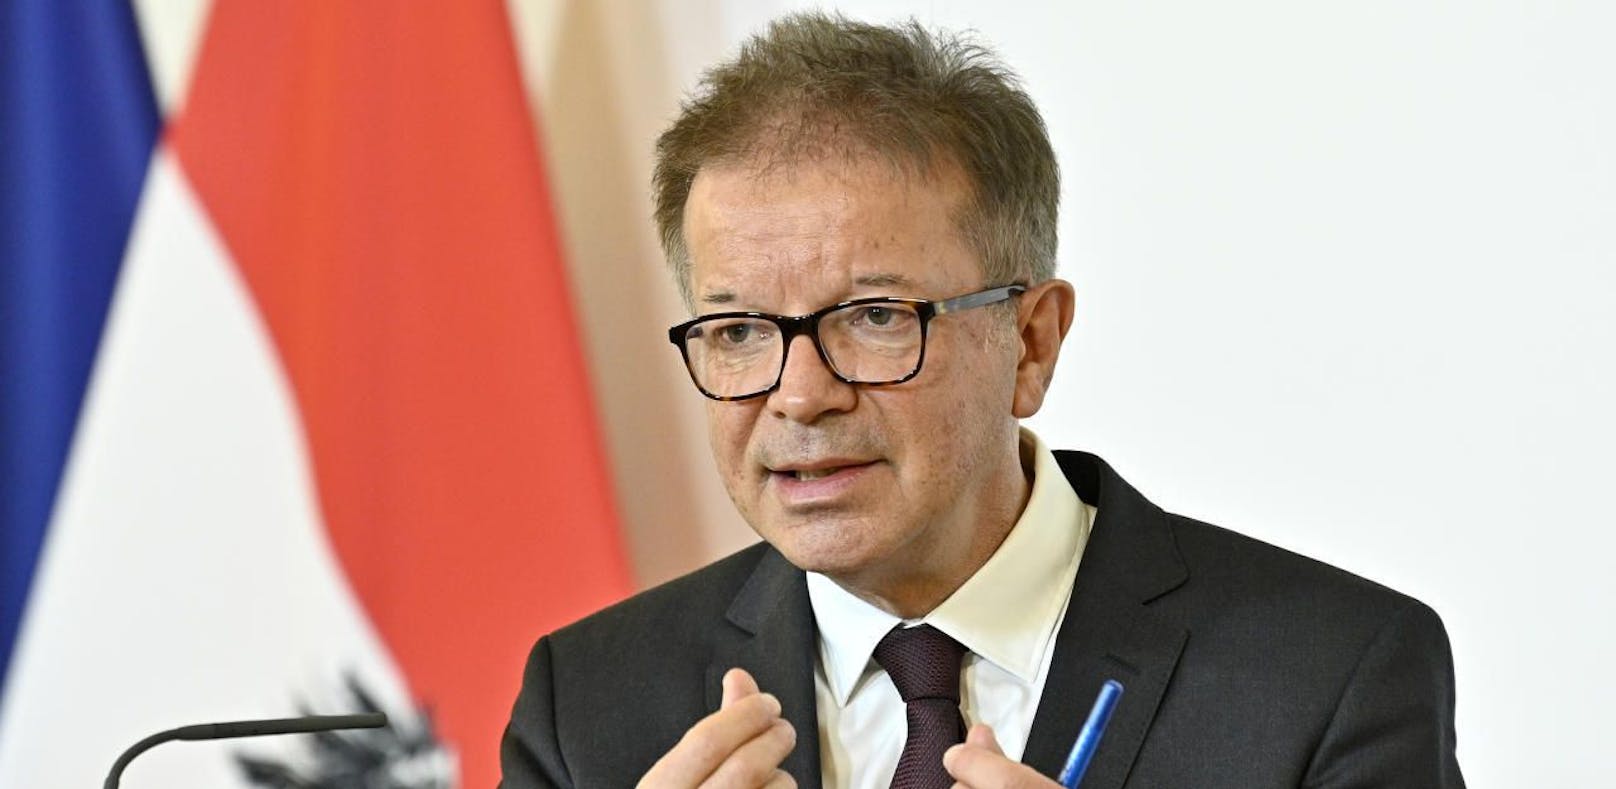 Gesundheitsminister Rudolf Anschober (Grüne)